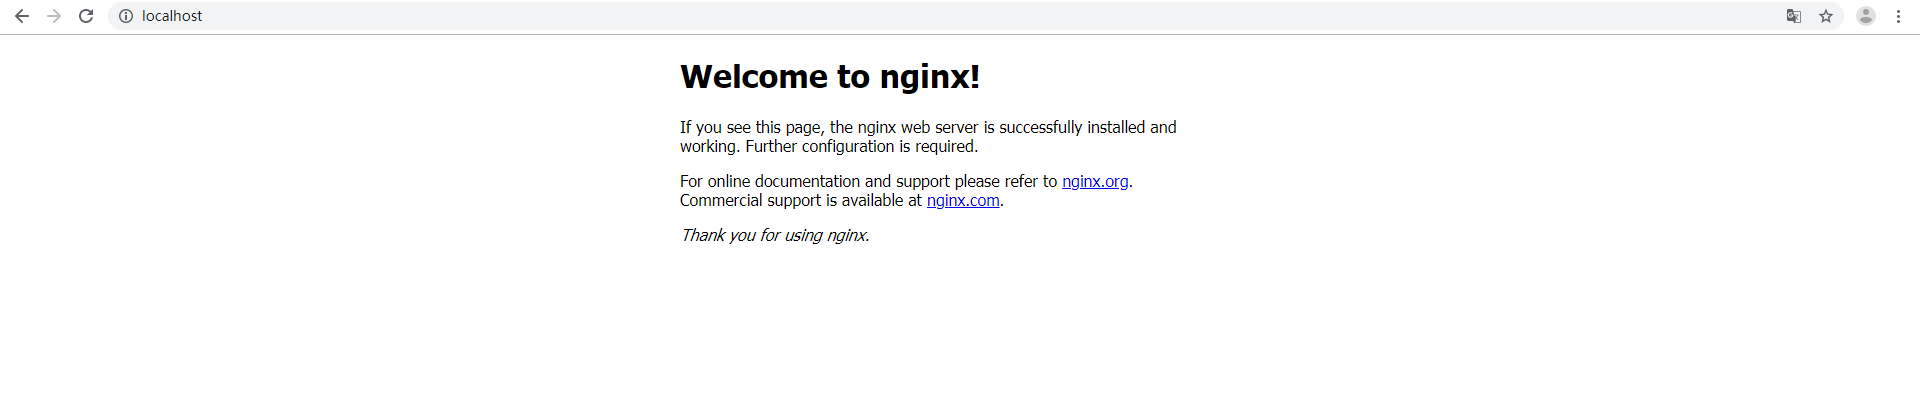 nginx中通过配置http服务器实现动静分离）